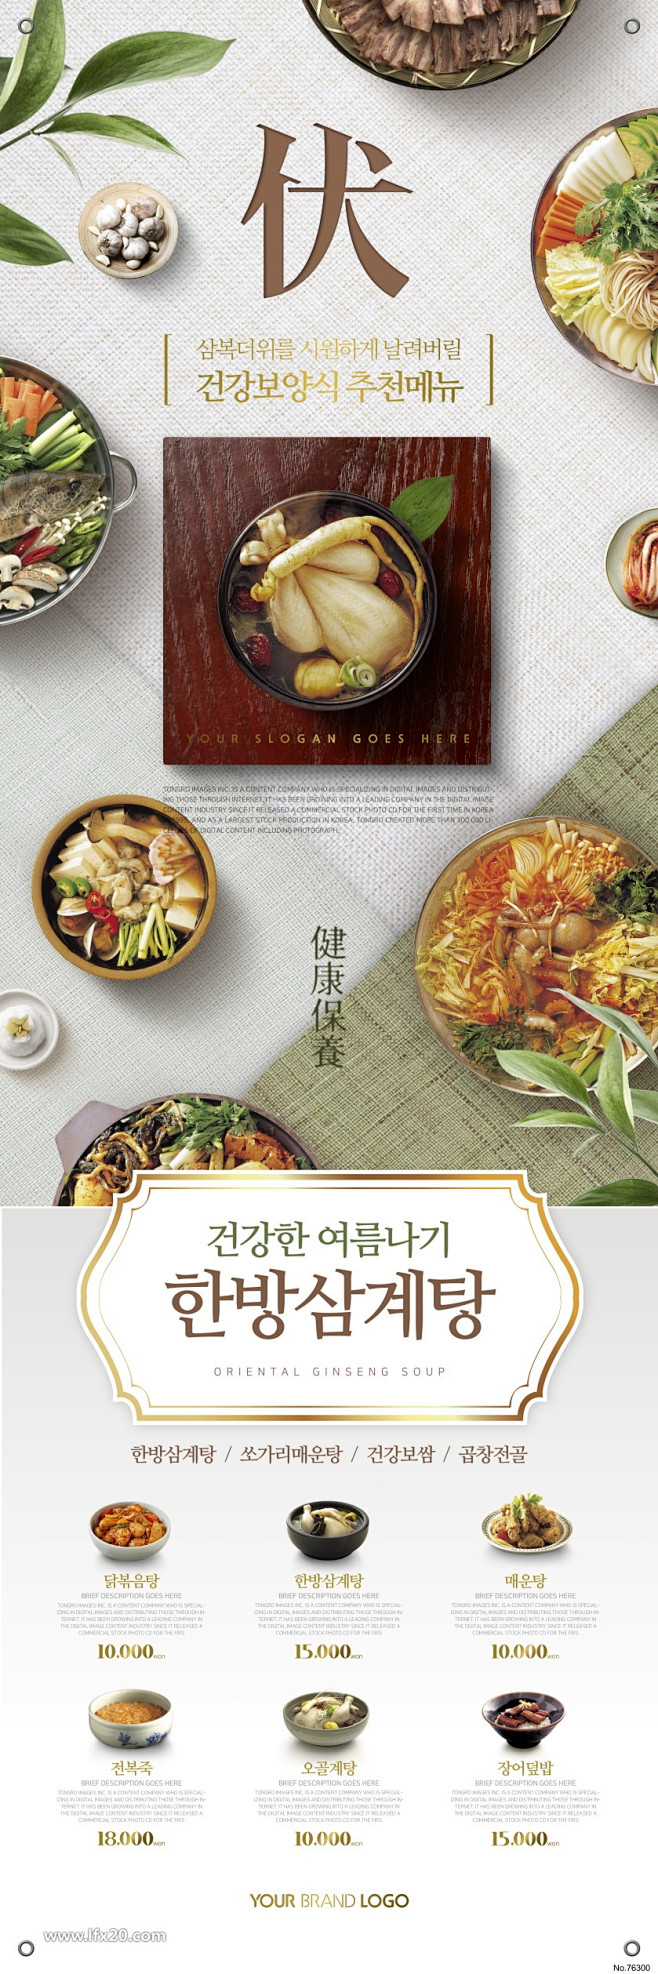 韩式美食网页页面设计素材